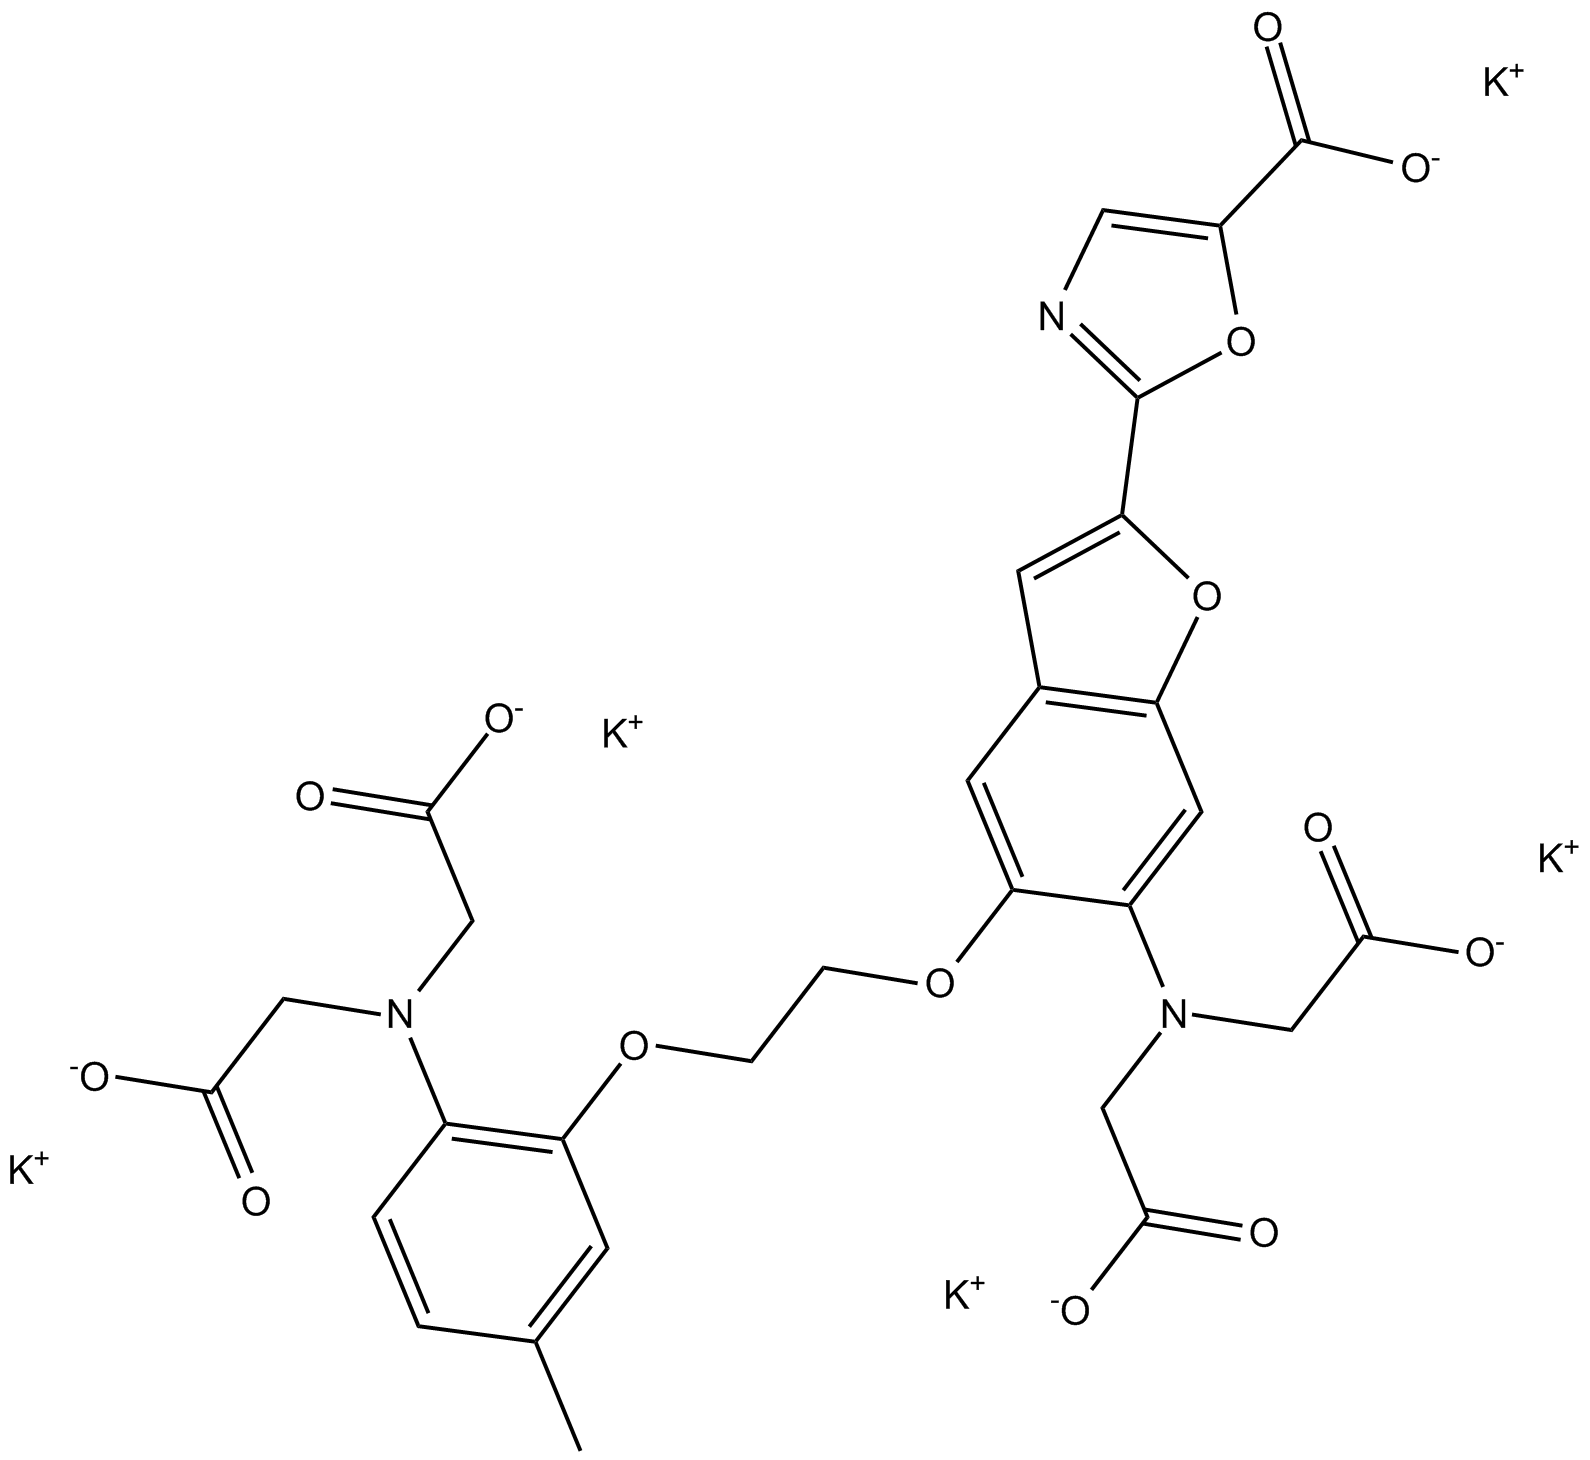 Fura-2 (potassium salt)